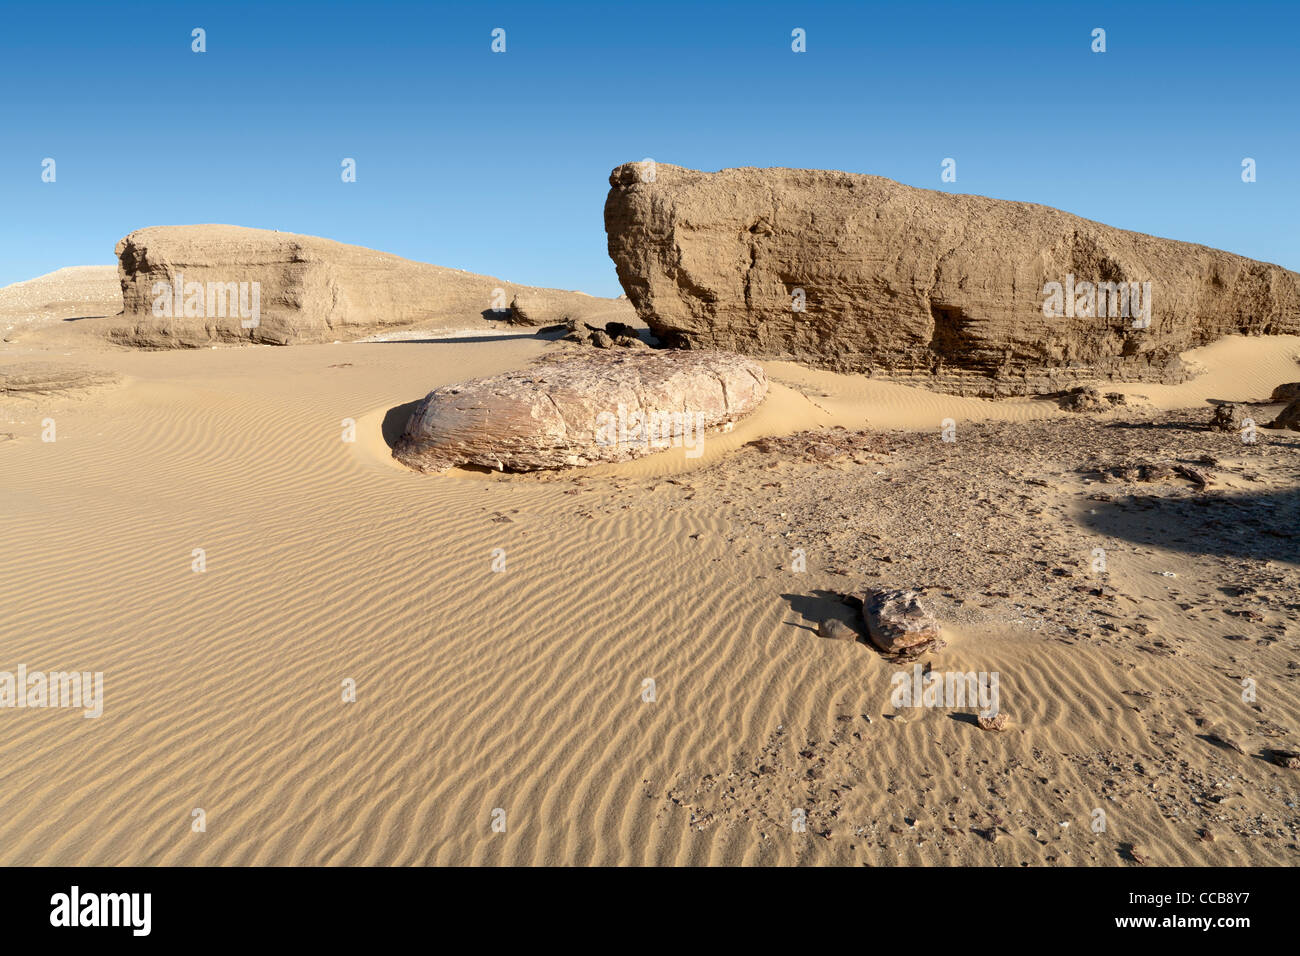 Les lions de la Boue Sable striée en champ yardang Dakhla Oasis Afrique Egypte Banque D'Images